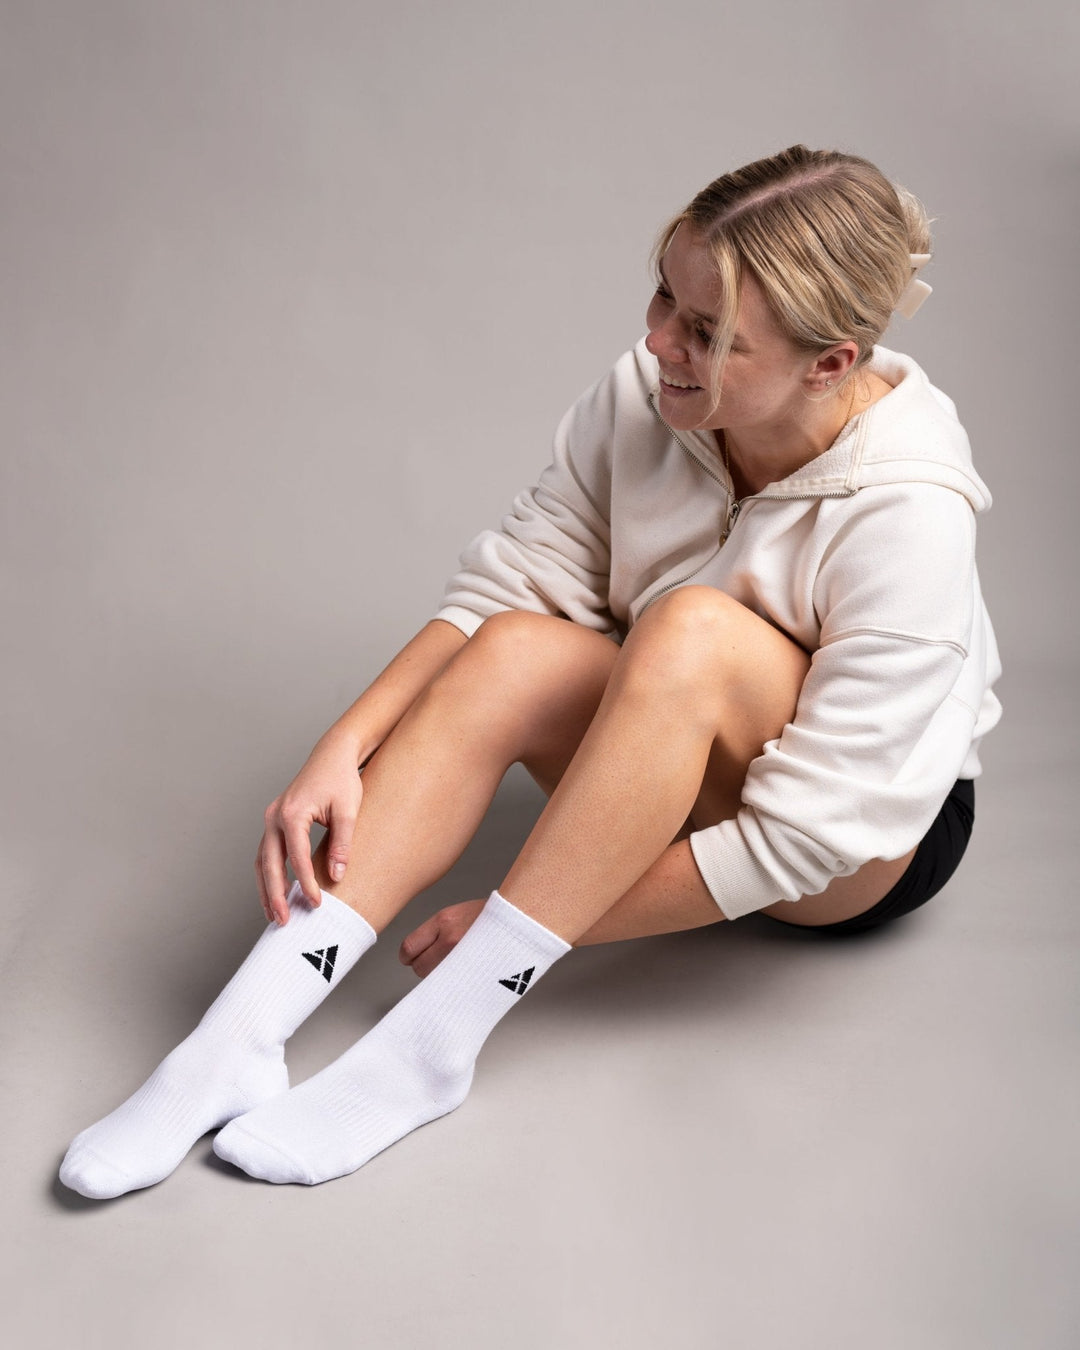 Hohe Sportsocken / Cushioned Crew Socks 9er Pack (White) - Athletic Aesthetics